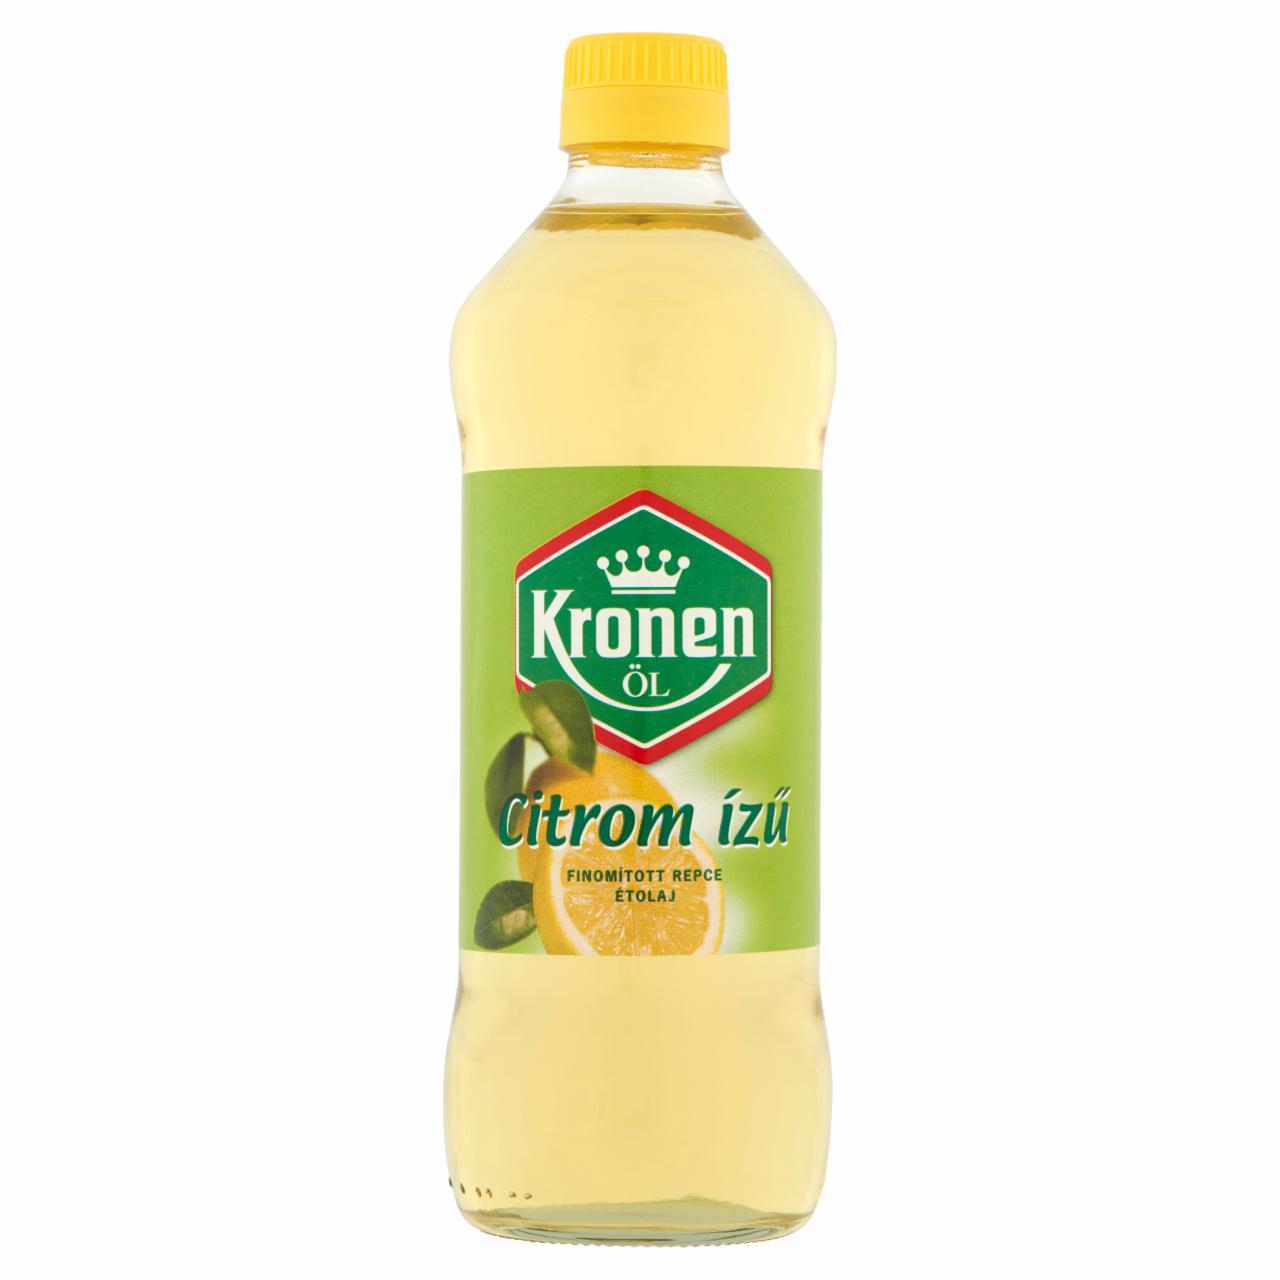 Képek - Kronen citrom ízű finomított repce étolaj 0,5 l